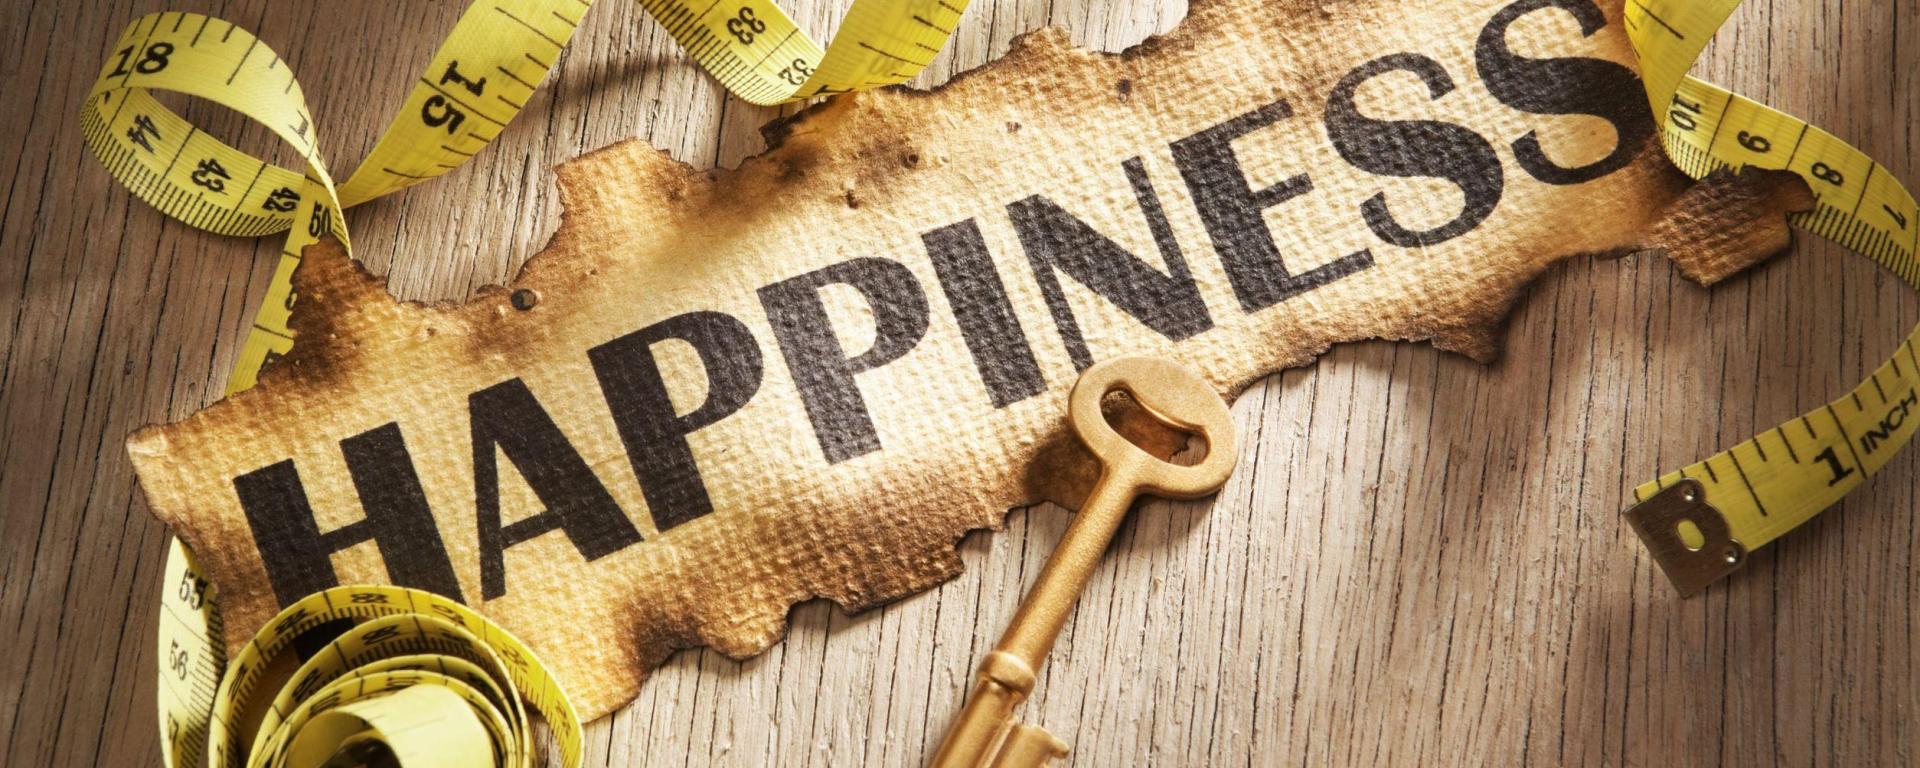 20 απλές απολαύσεις της ζωής που ανεβάζουν το «δείκτη της ευτυχίας»